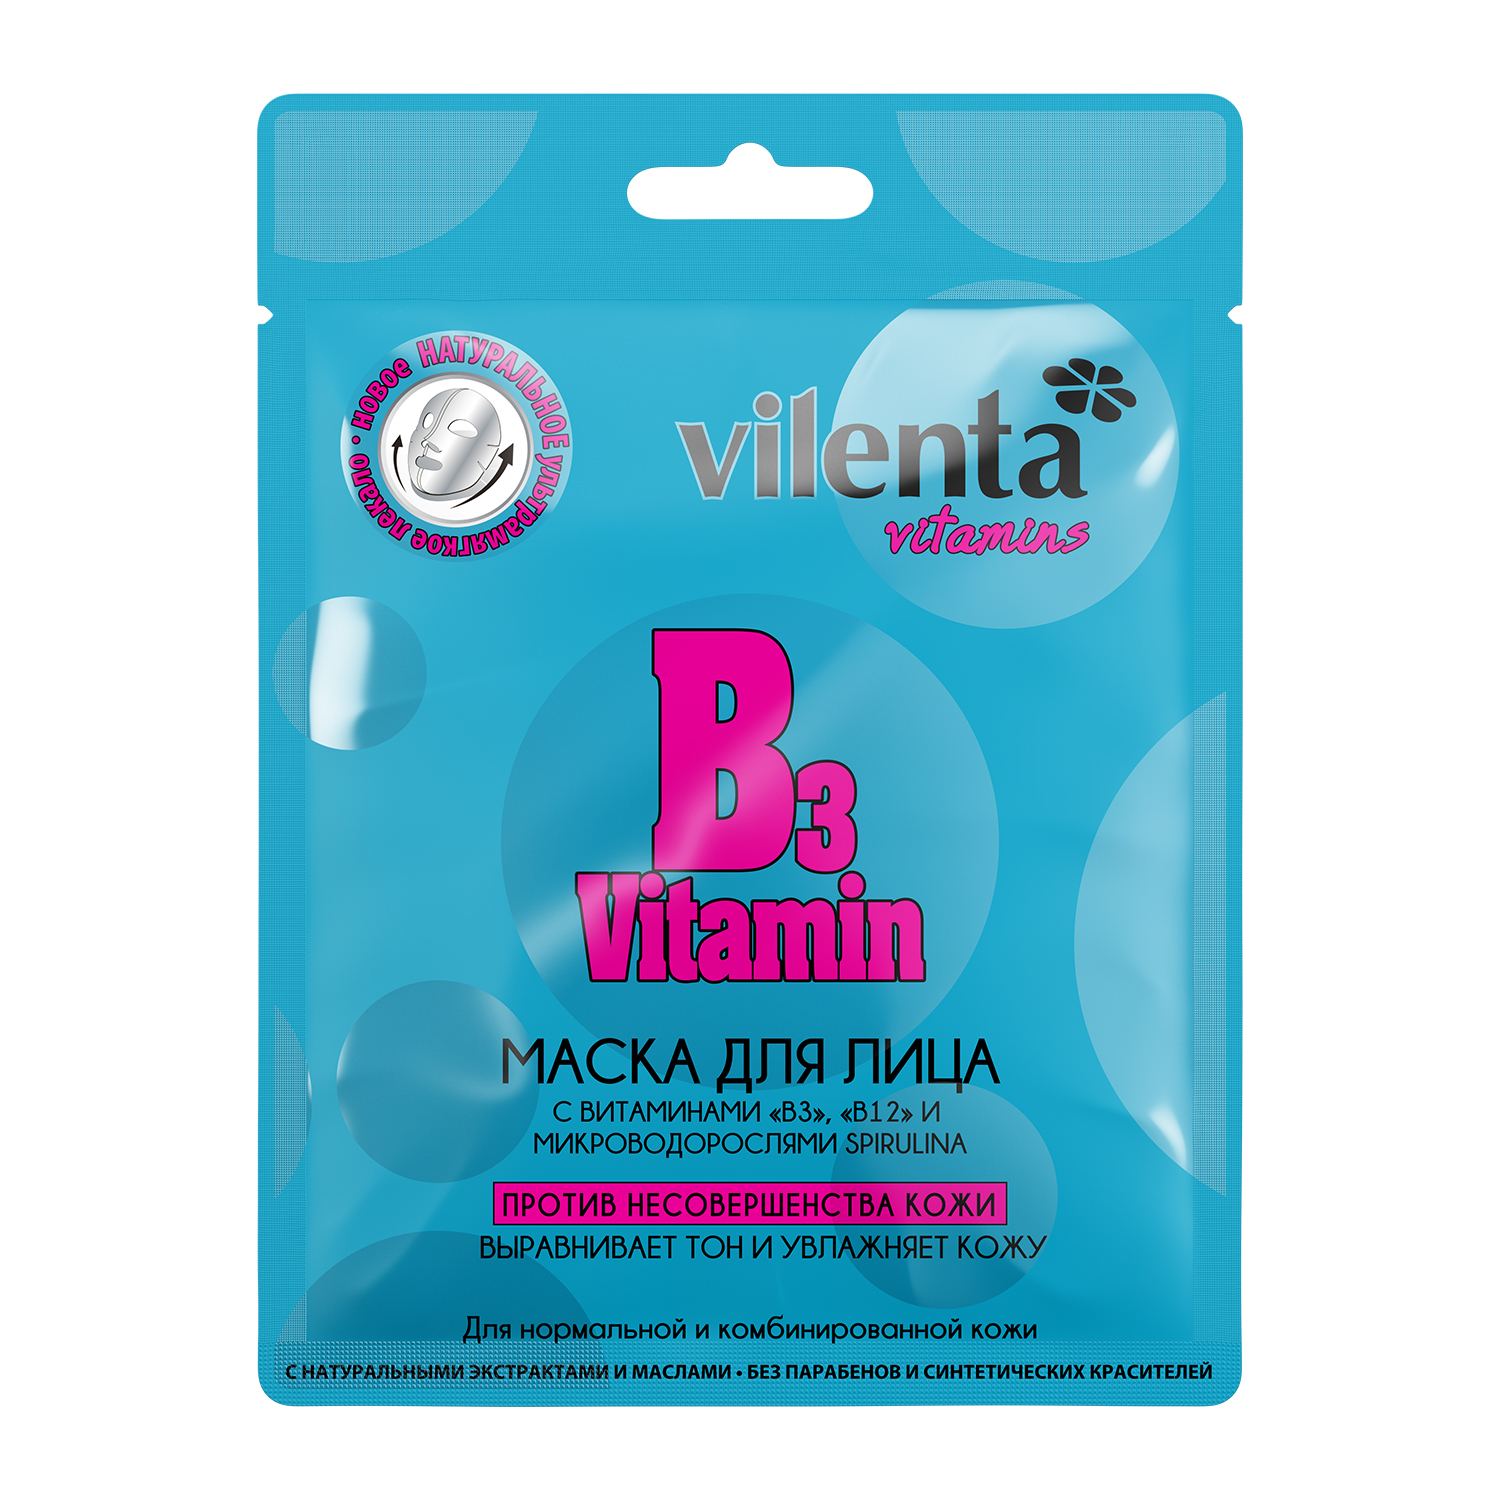 Вилента vitamins маска д/лица b3 vitamin п/несовершенства кожи с вит."в3", "в12" и микроводорослями spirulina саше 28г №1